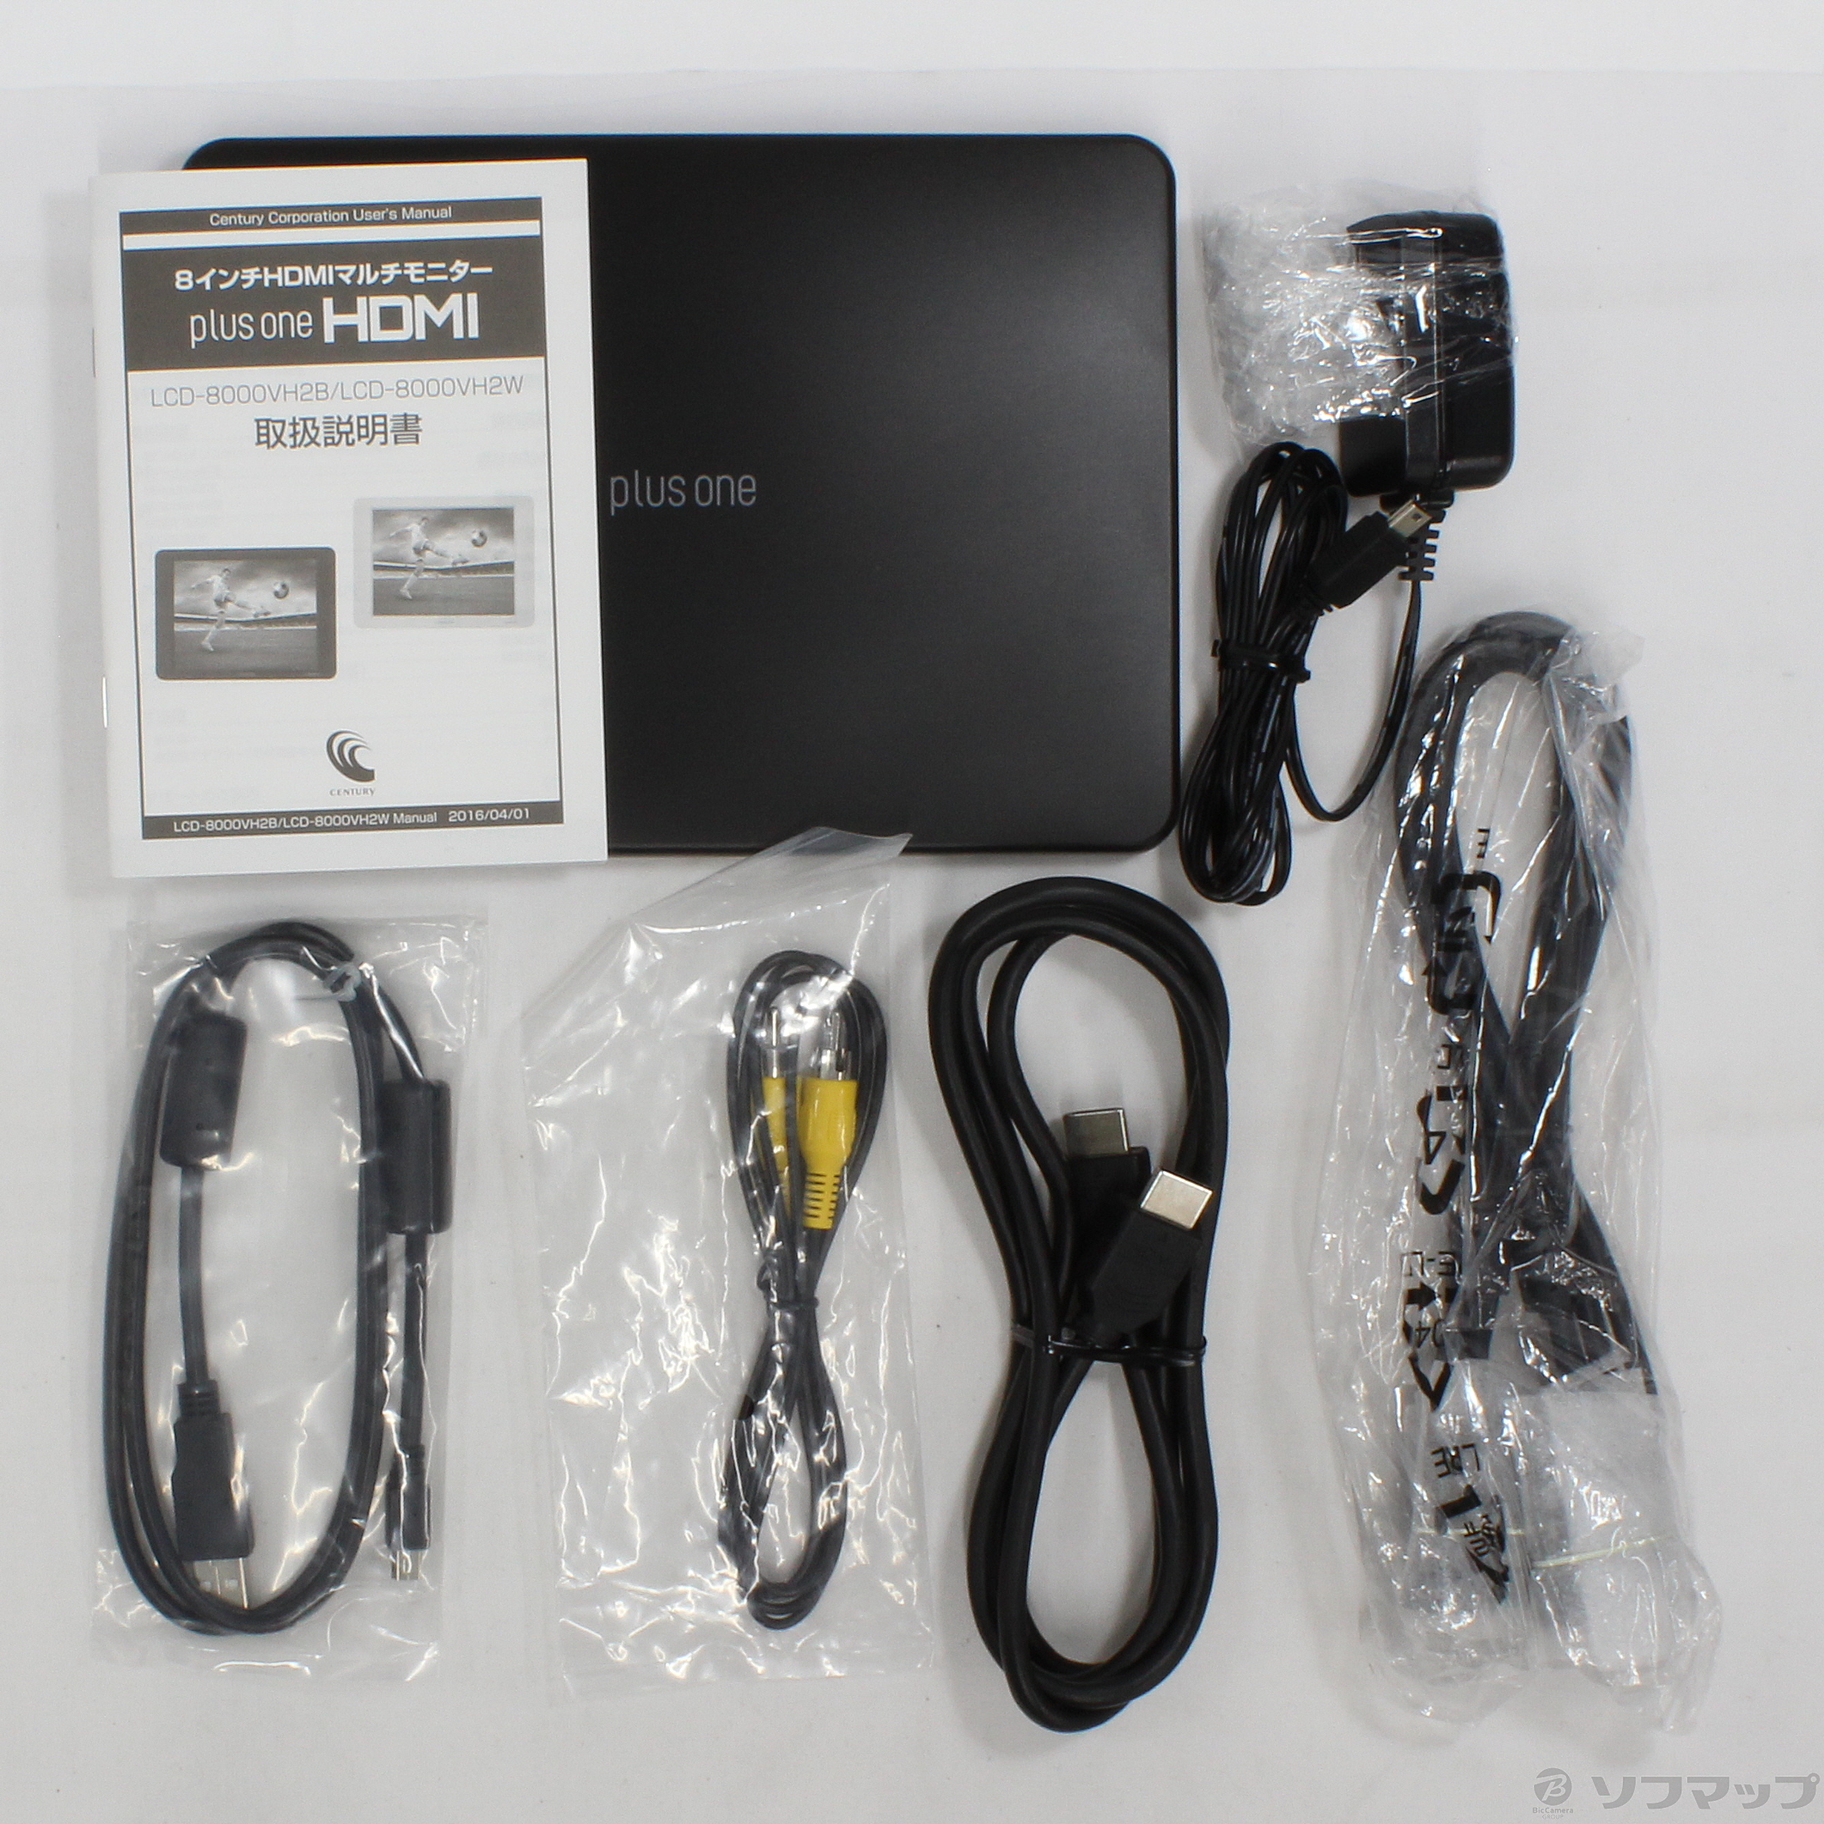 中古】plus one HDMI LCD-8000VH2B ブラック ◇03/19(金)値下げ